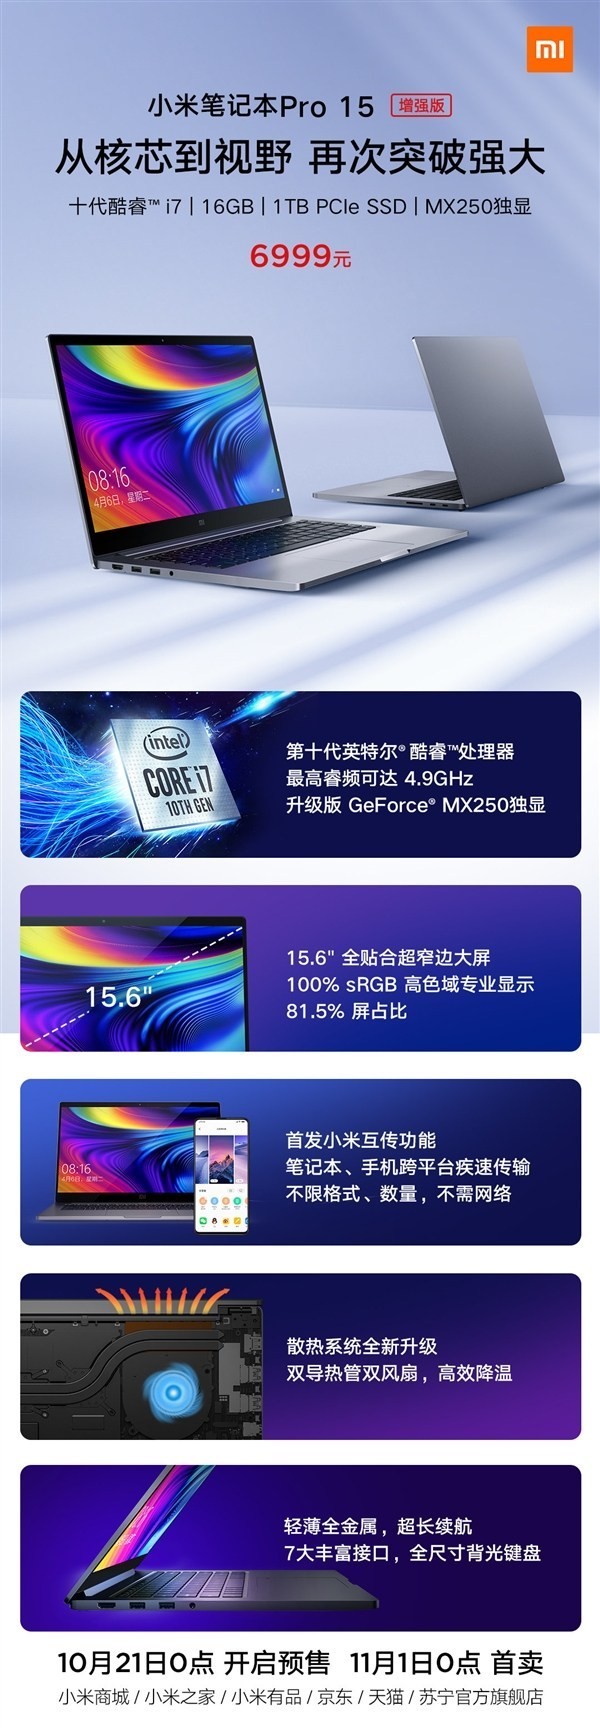 Xiaomi ra mắt Mi Notebook Pro 15.6 Enhanced Edition (2019) nâng cấp chipset, RAM và màn hình ảnh 2